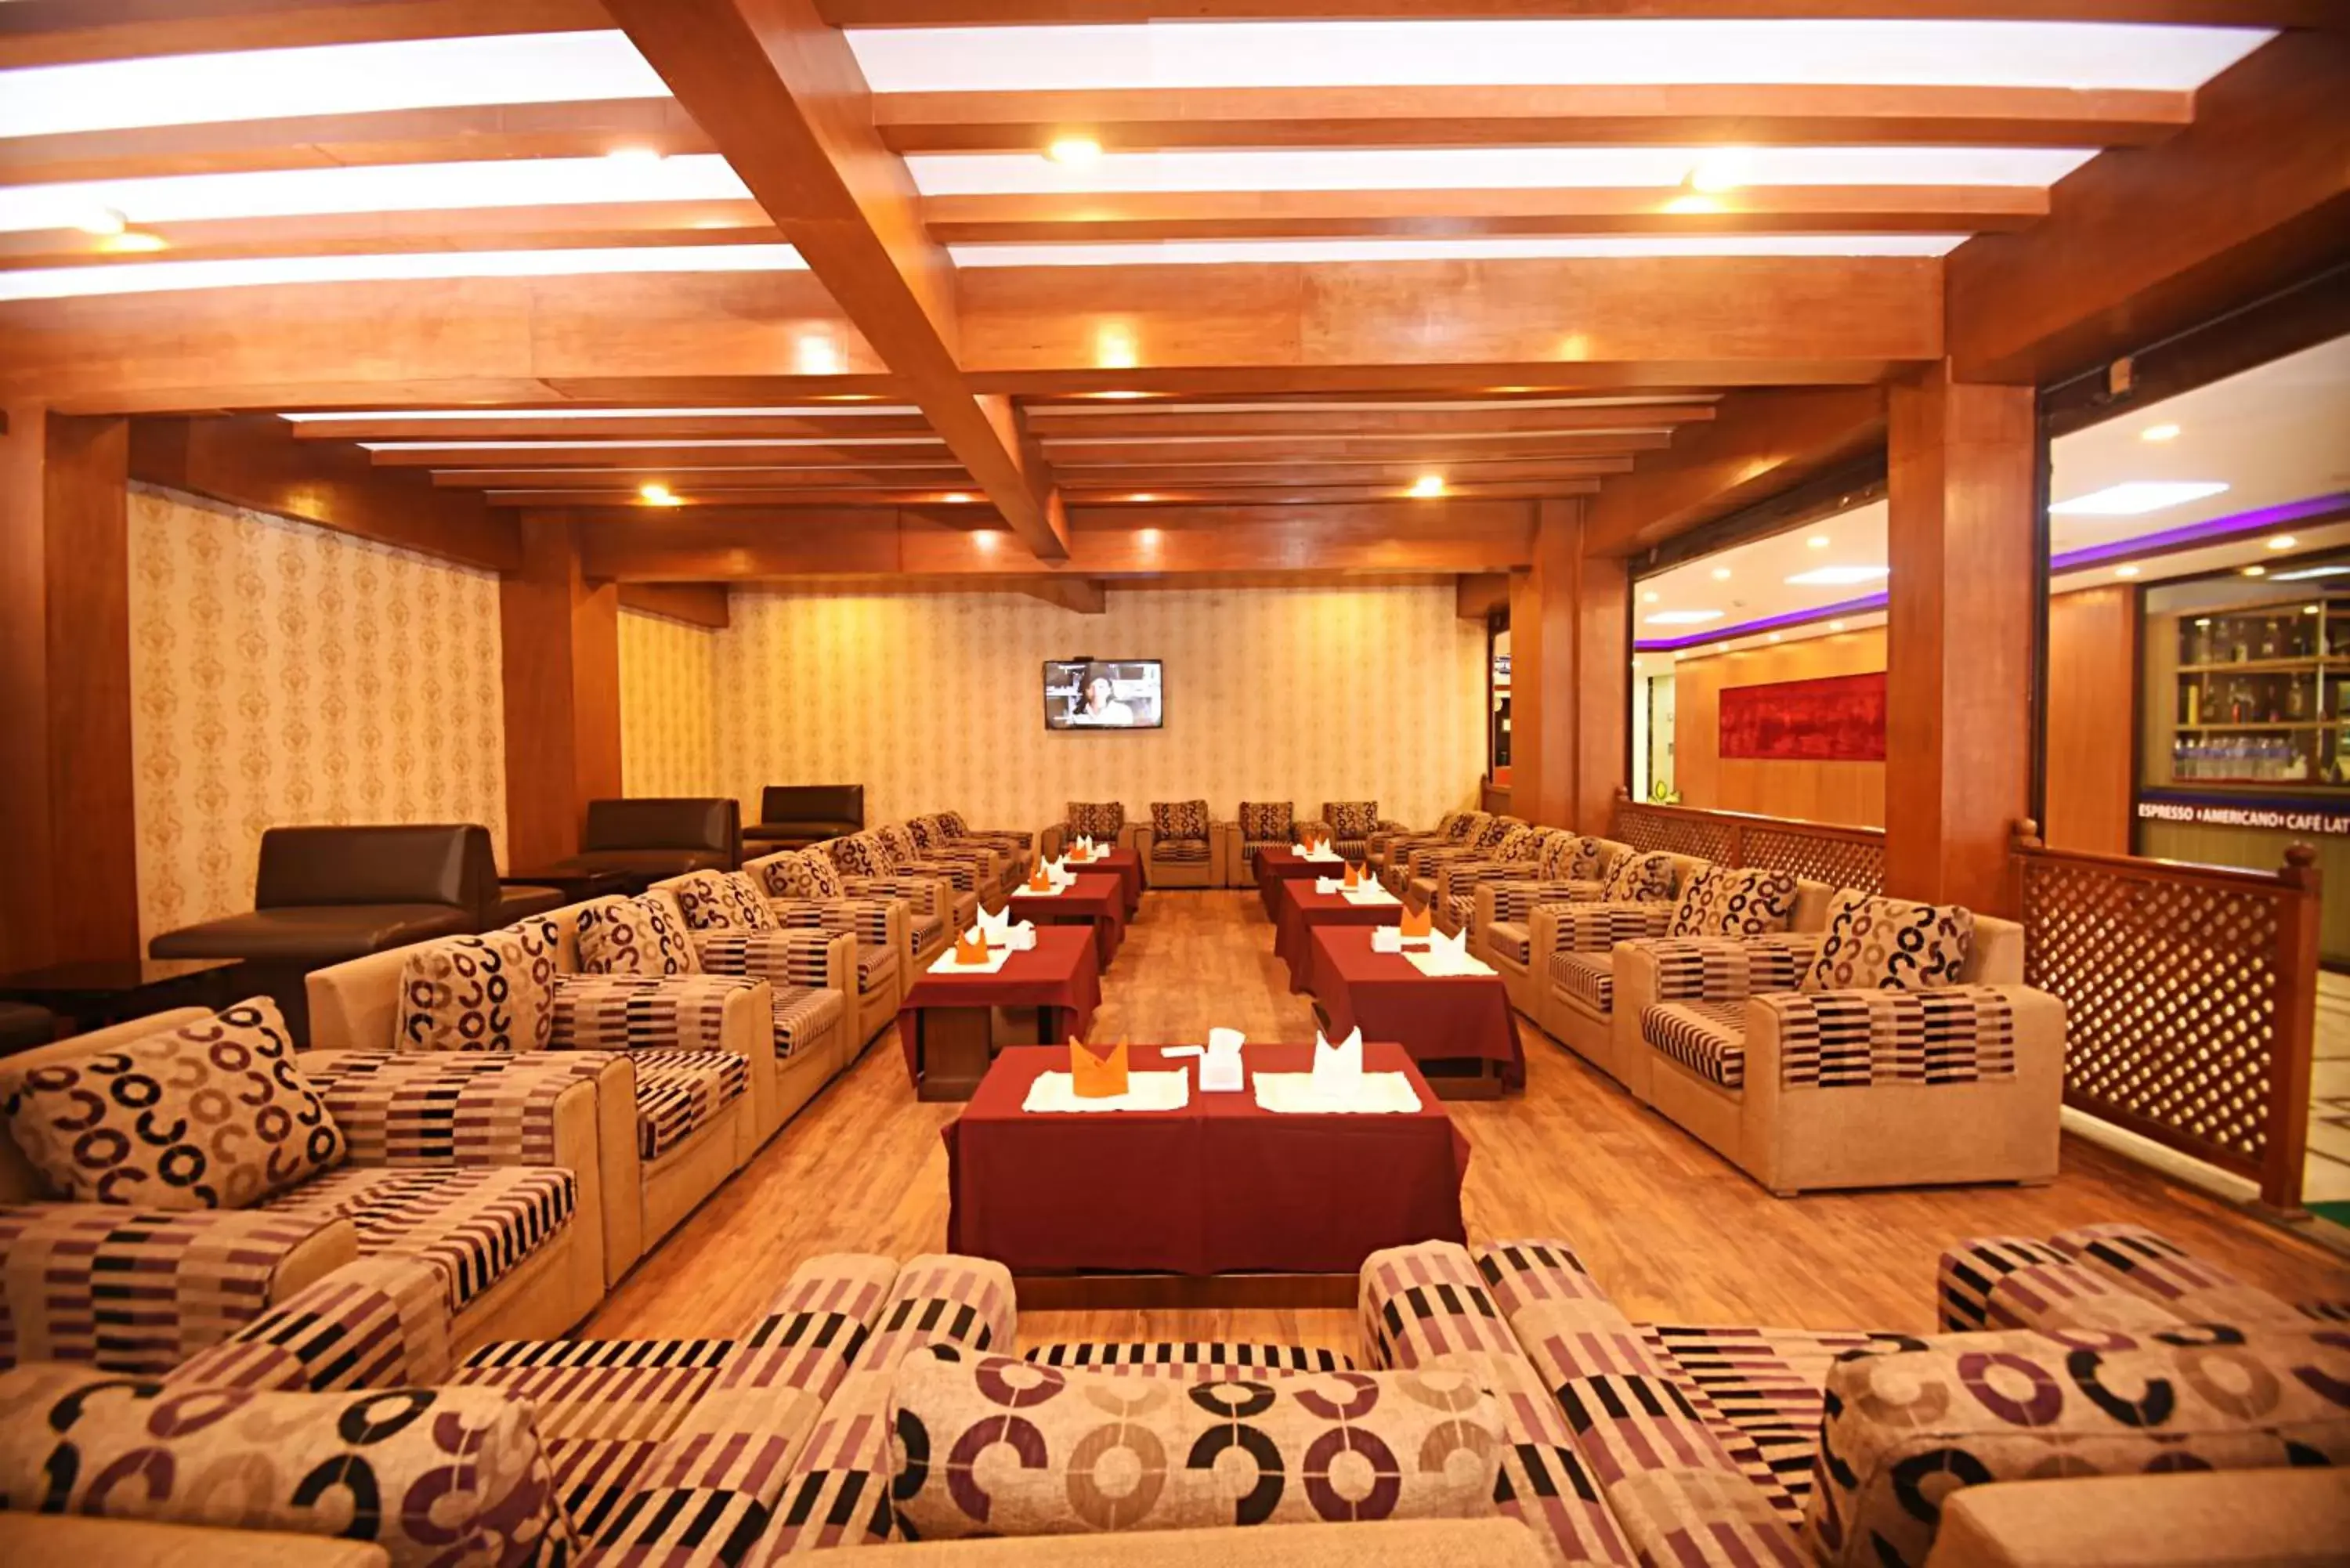 Lobby or reception in The Address Kathmandu Hotel